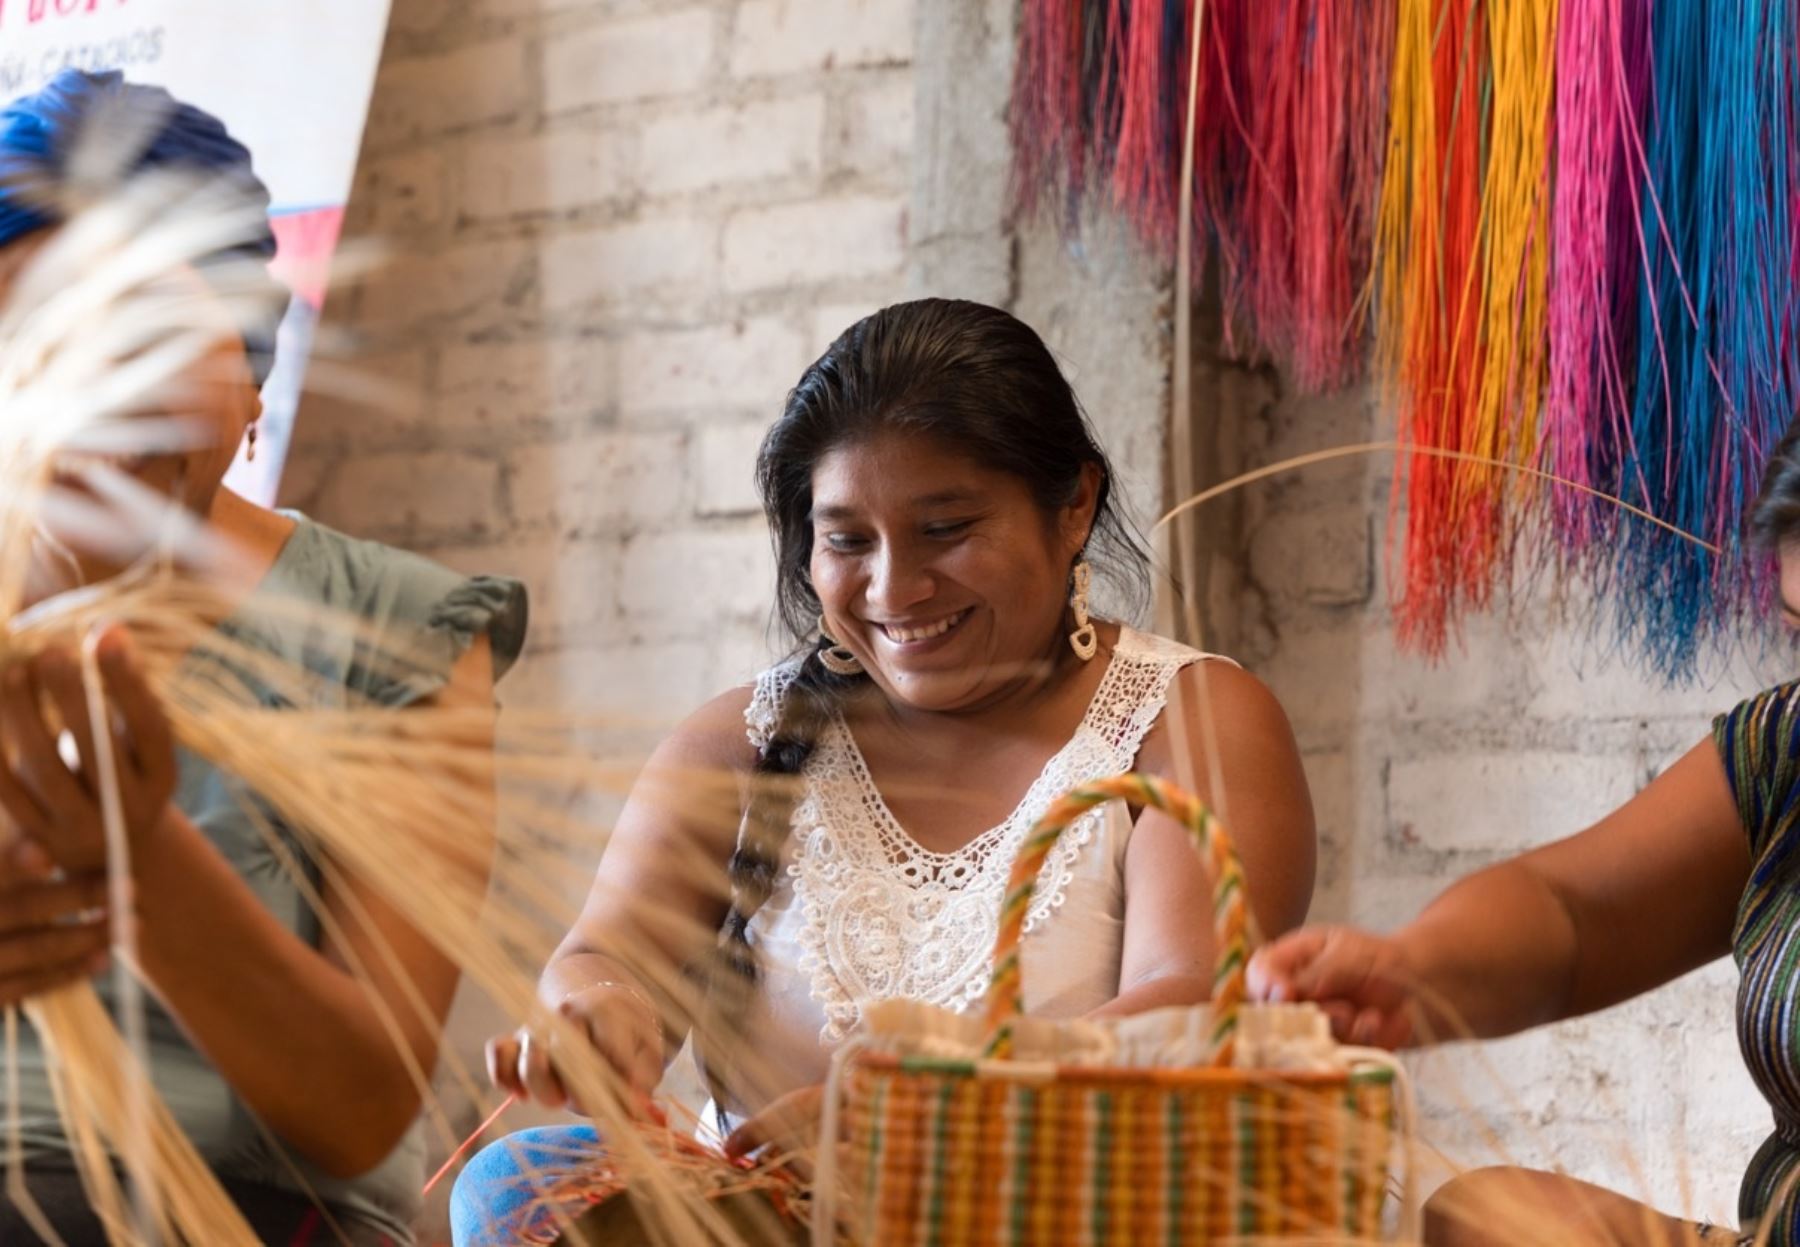 Moda sostenible de la mano de artesanas peruanas